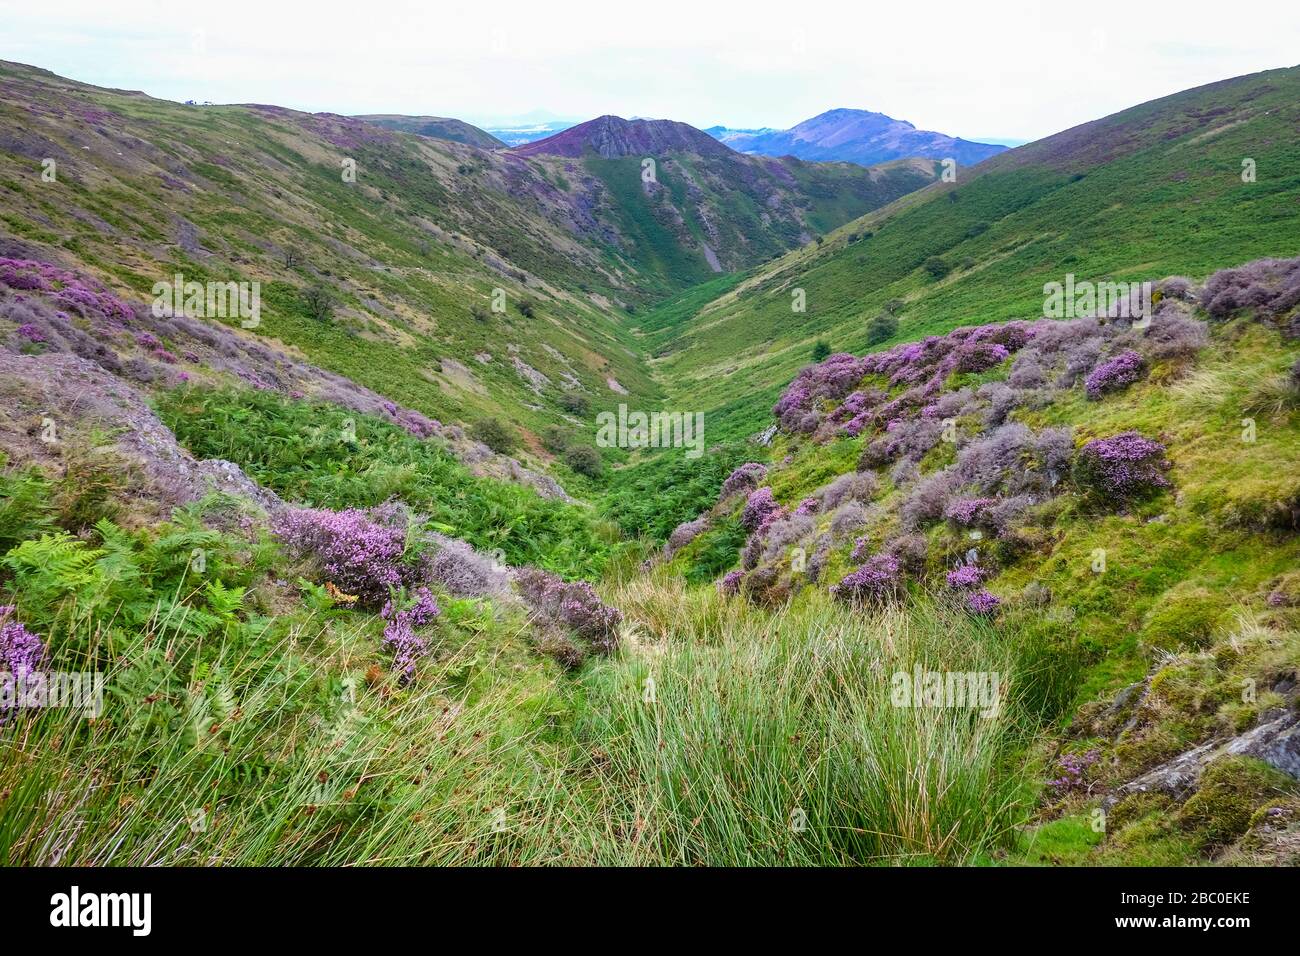 Die Long Mynd Range am Rande der Stadt Church Stretton in der Shropshire Hills Area of Outstanding Natural Beauty, Großbritannien Stockfoto